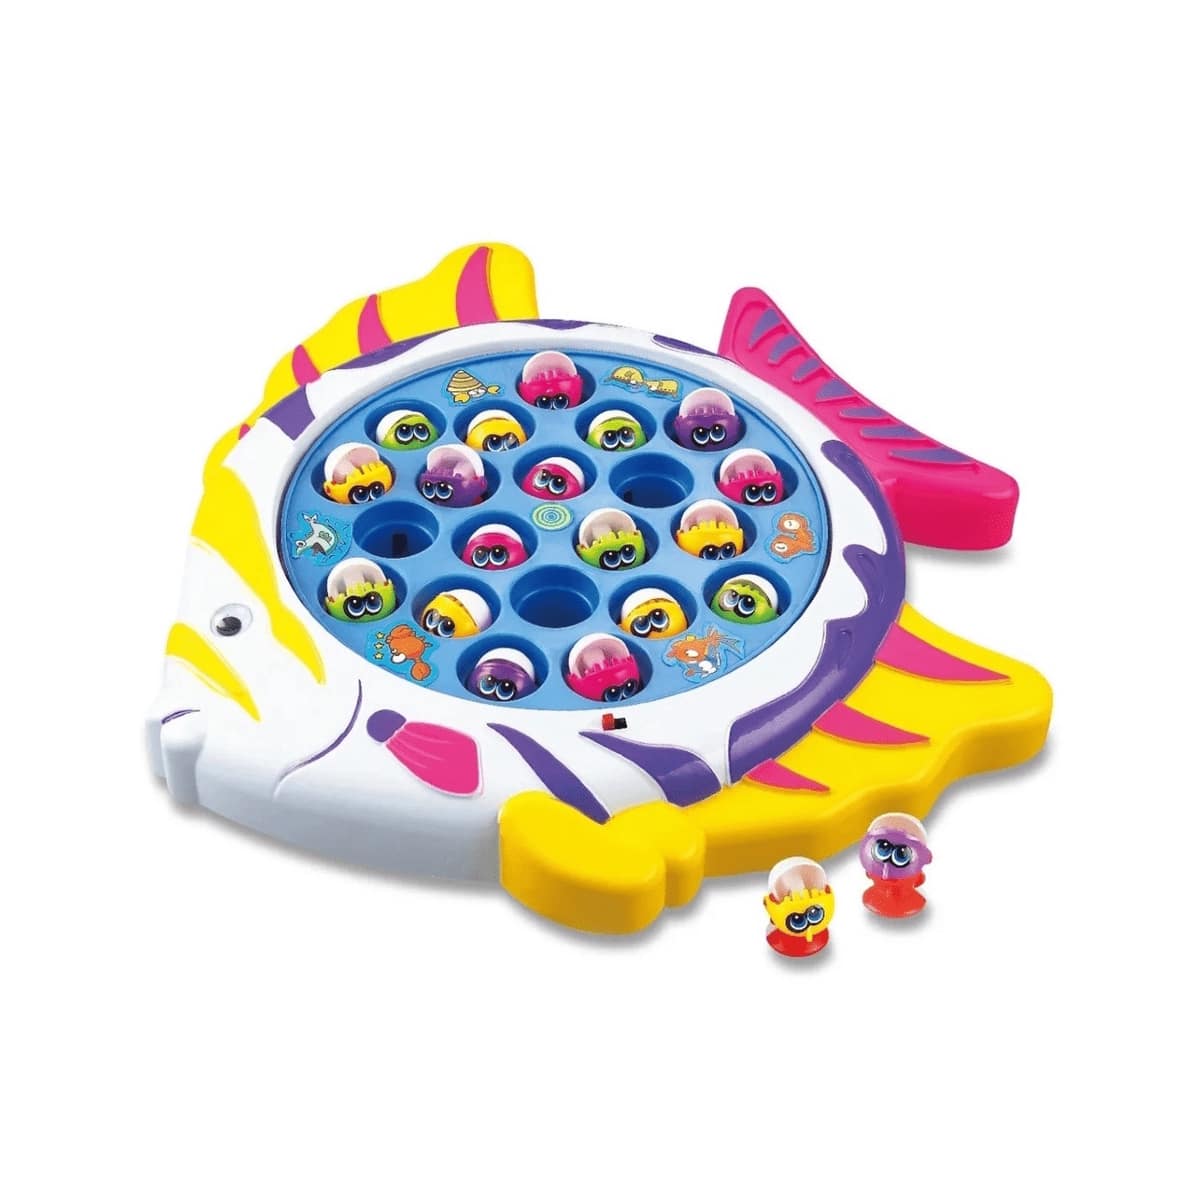 jogo playstation move puzzle collection ps3 nacional - Ri Happy Brinquedos  - Quanto mais Brincadeira, Melhor!